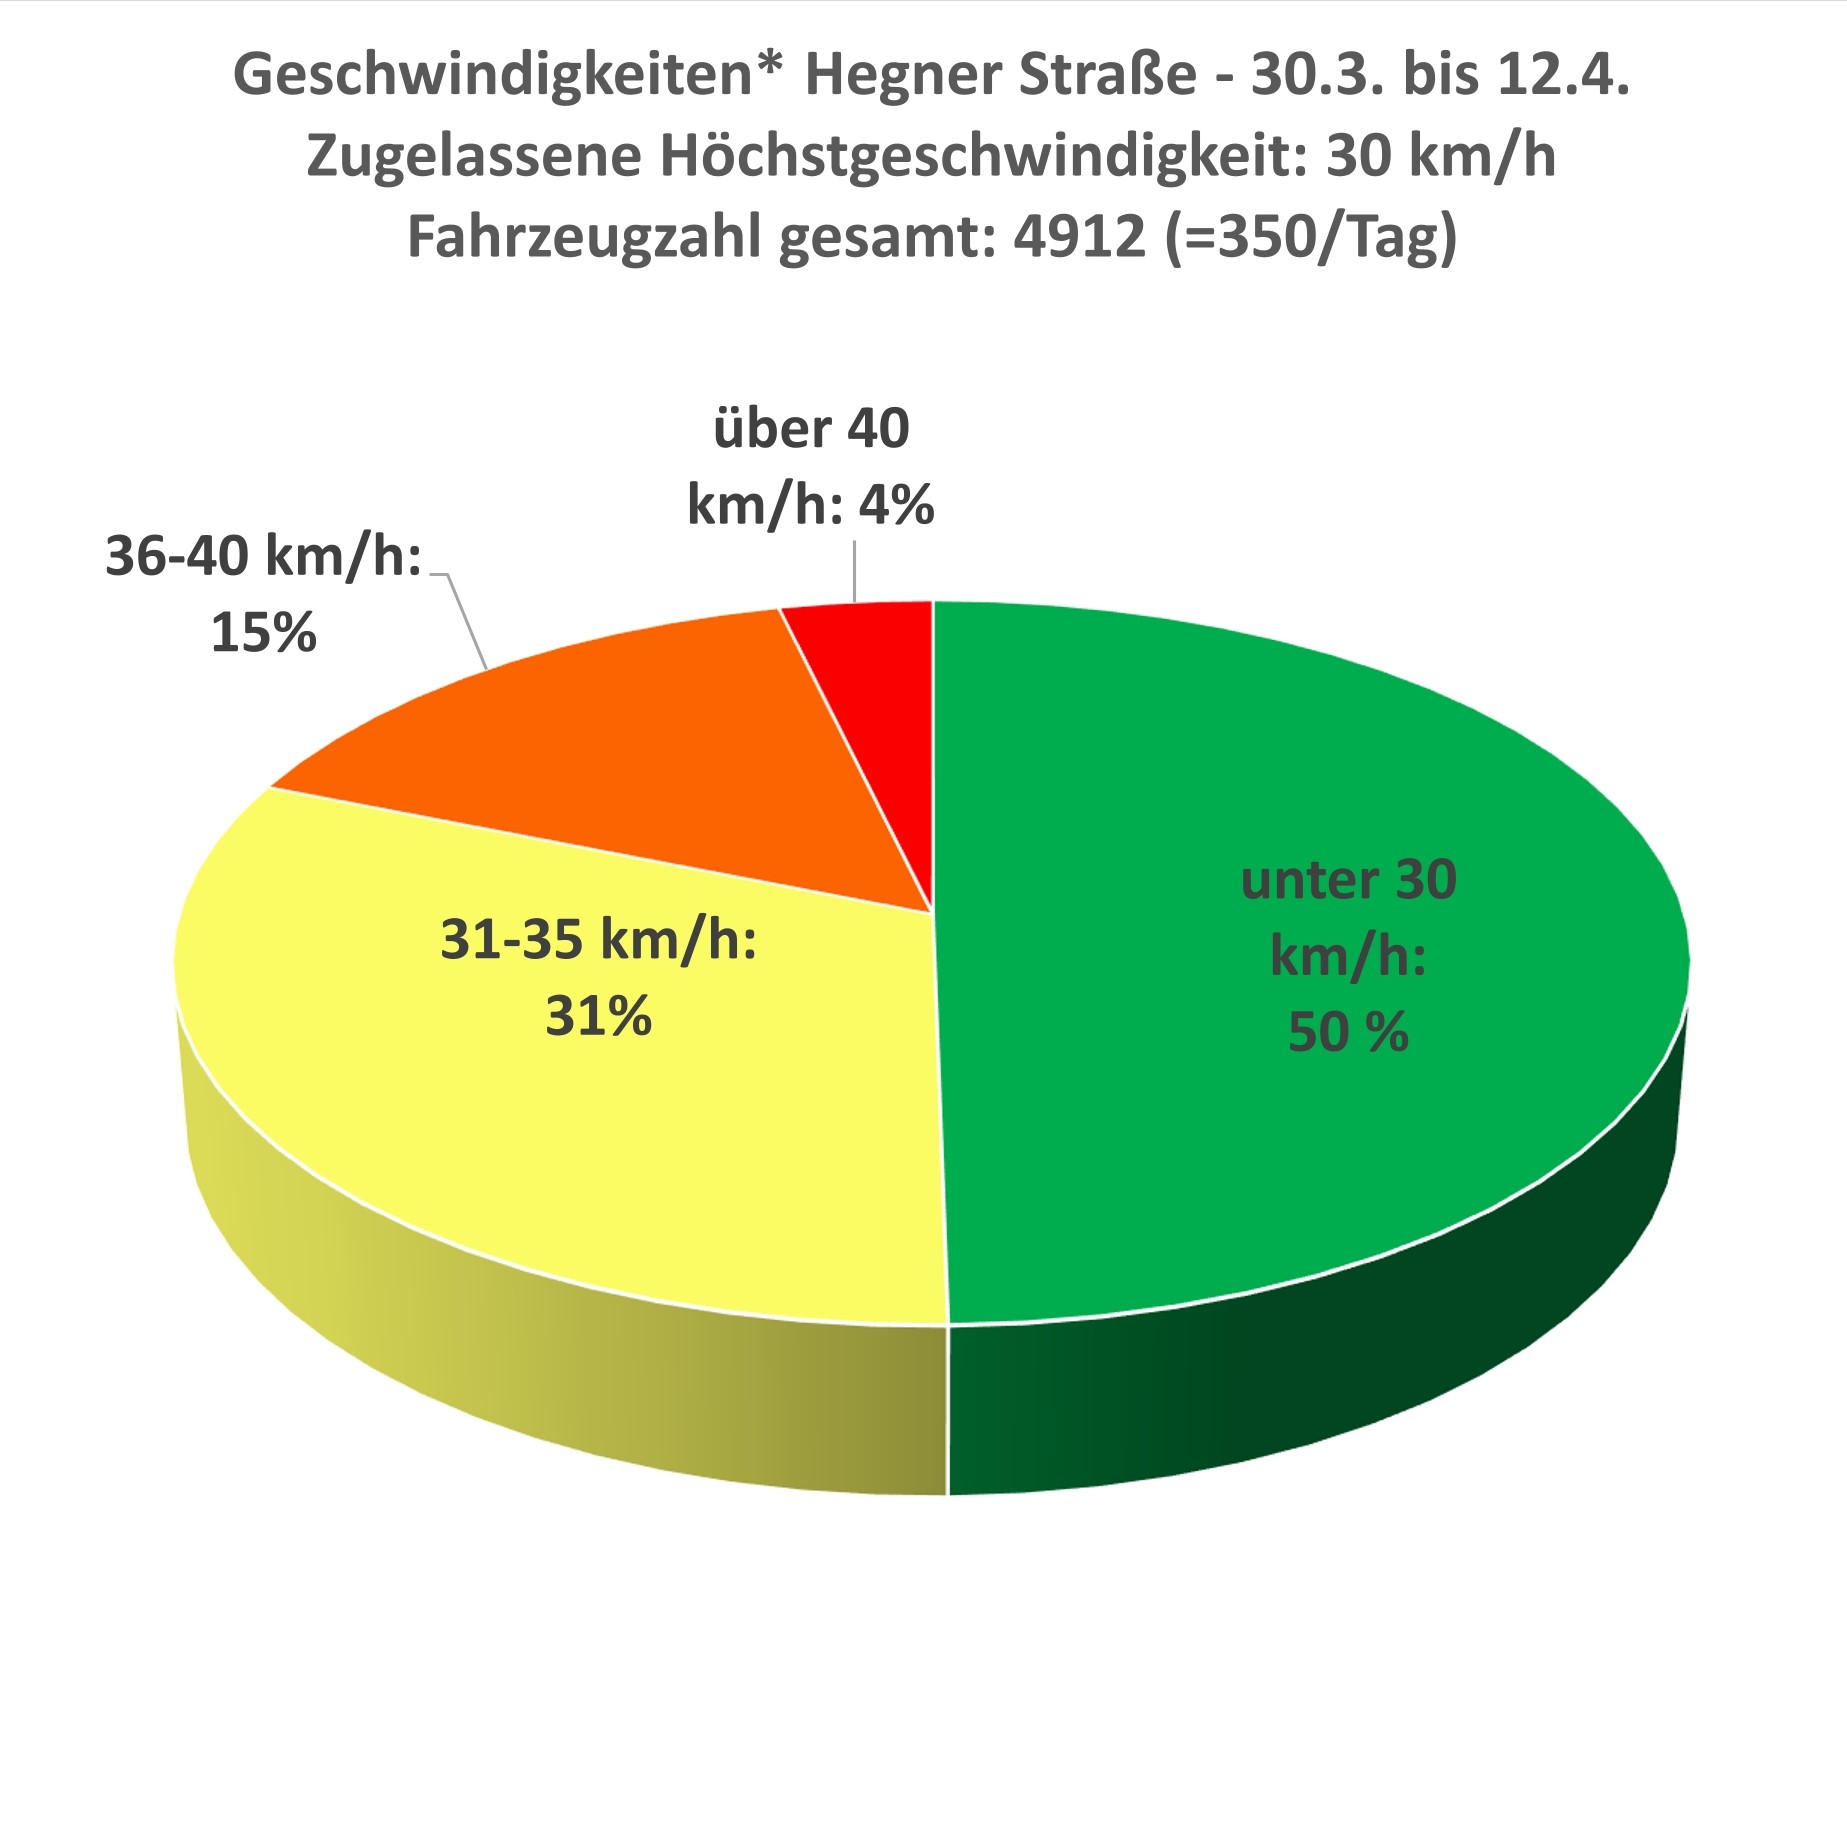  Diagramm - Geschwindigkeitsmessungen - Hegner Straße 